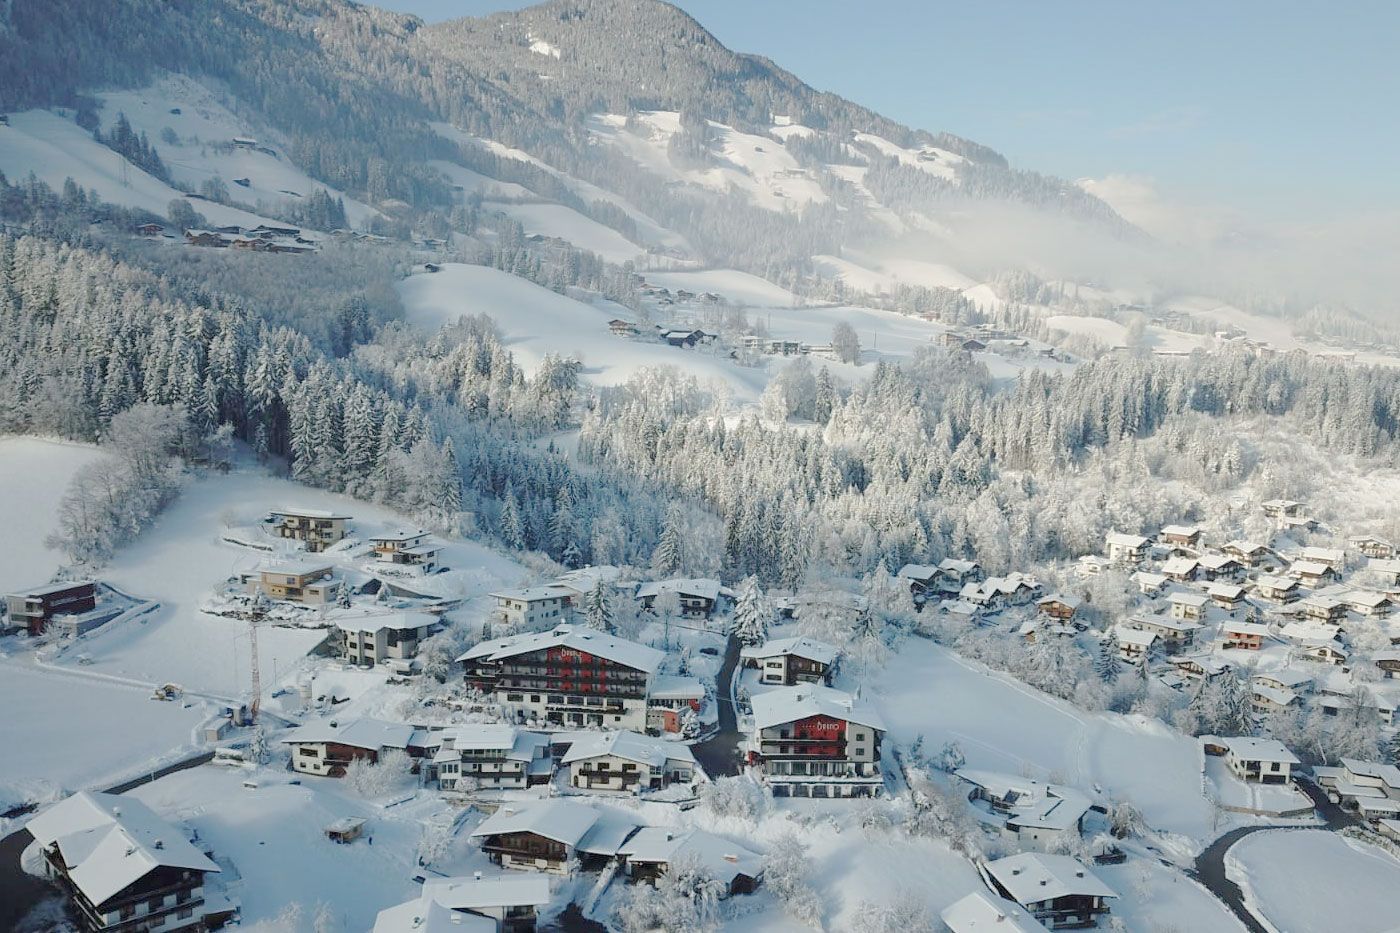 Winter Holidays in the Hotel Bruno, Fügen in the Zillertal